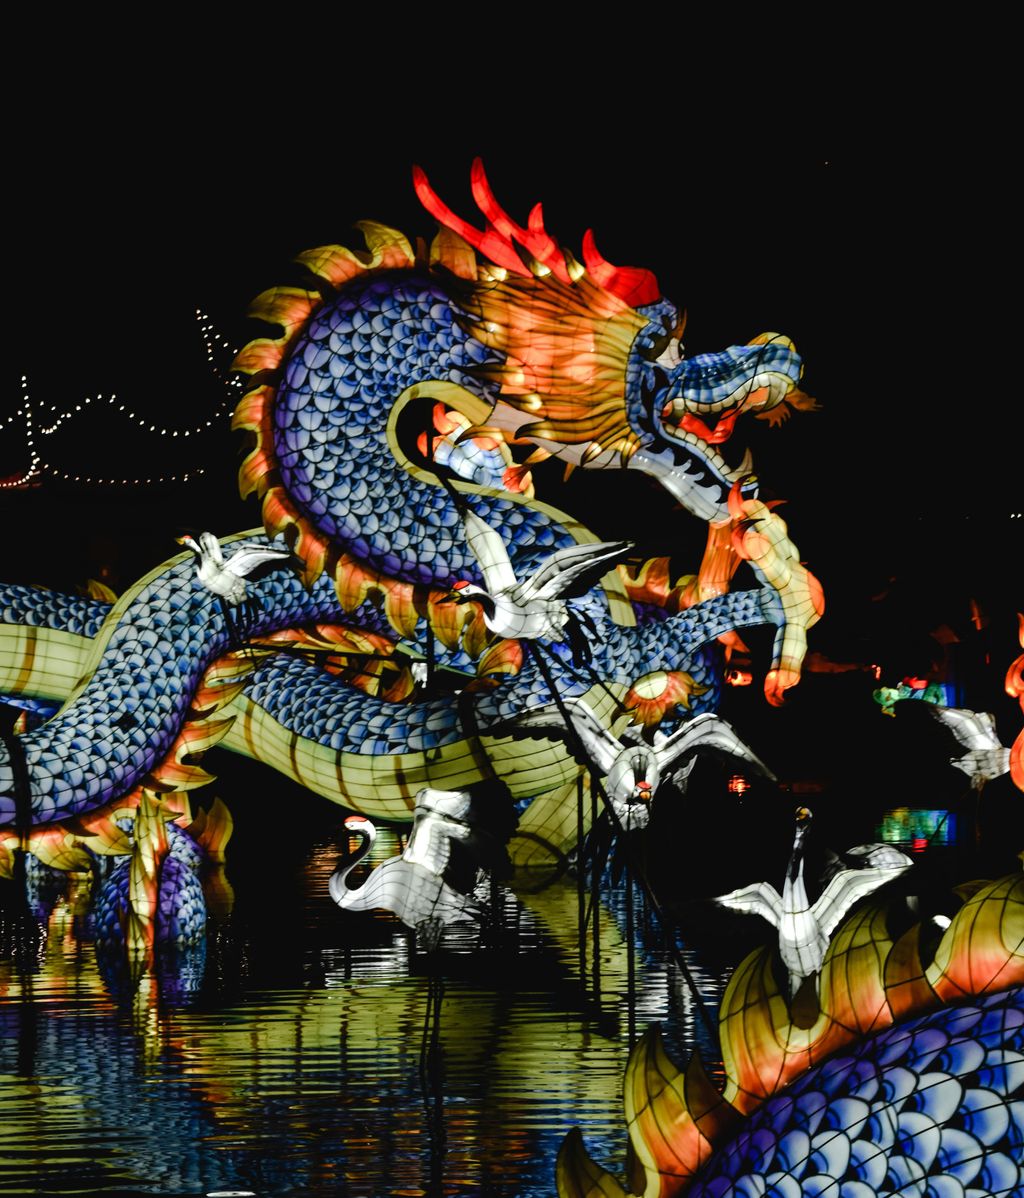 Este es el año del Dragón de Madera. FUENTE: Pexels